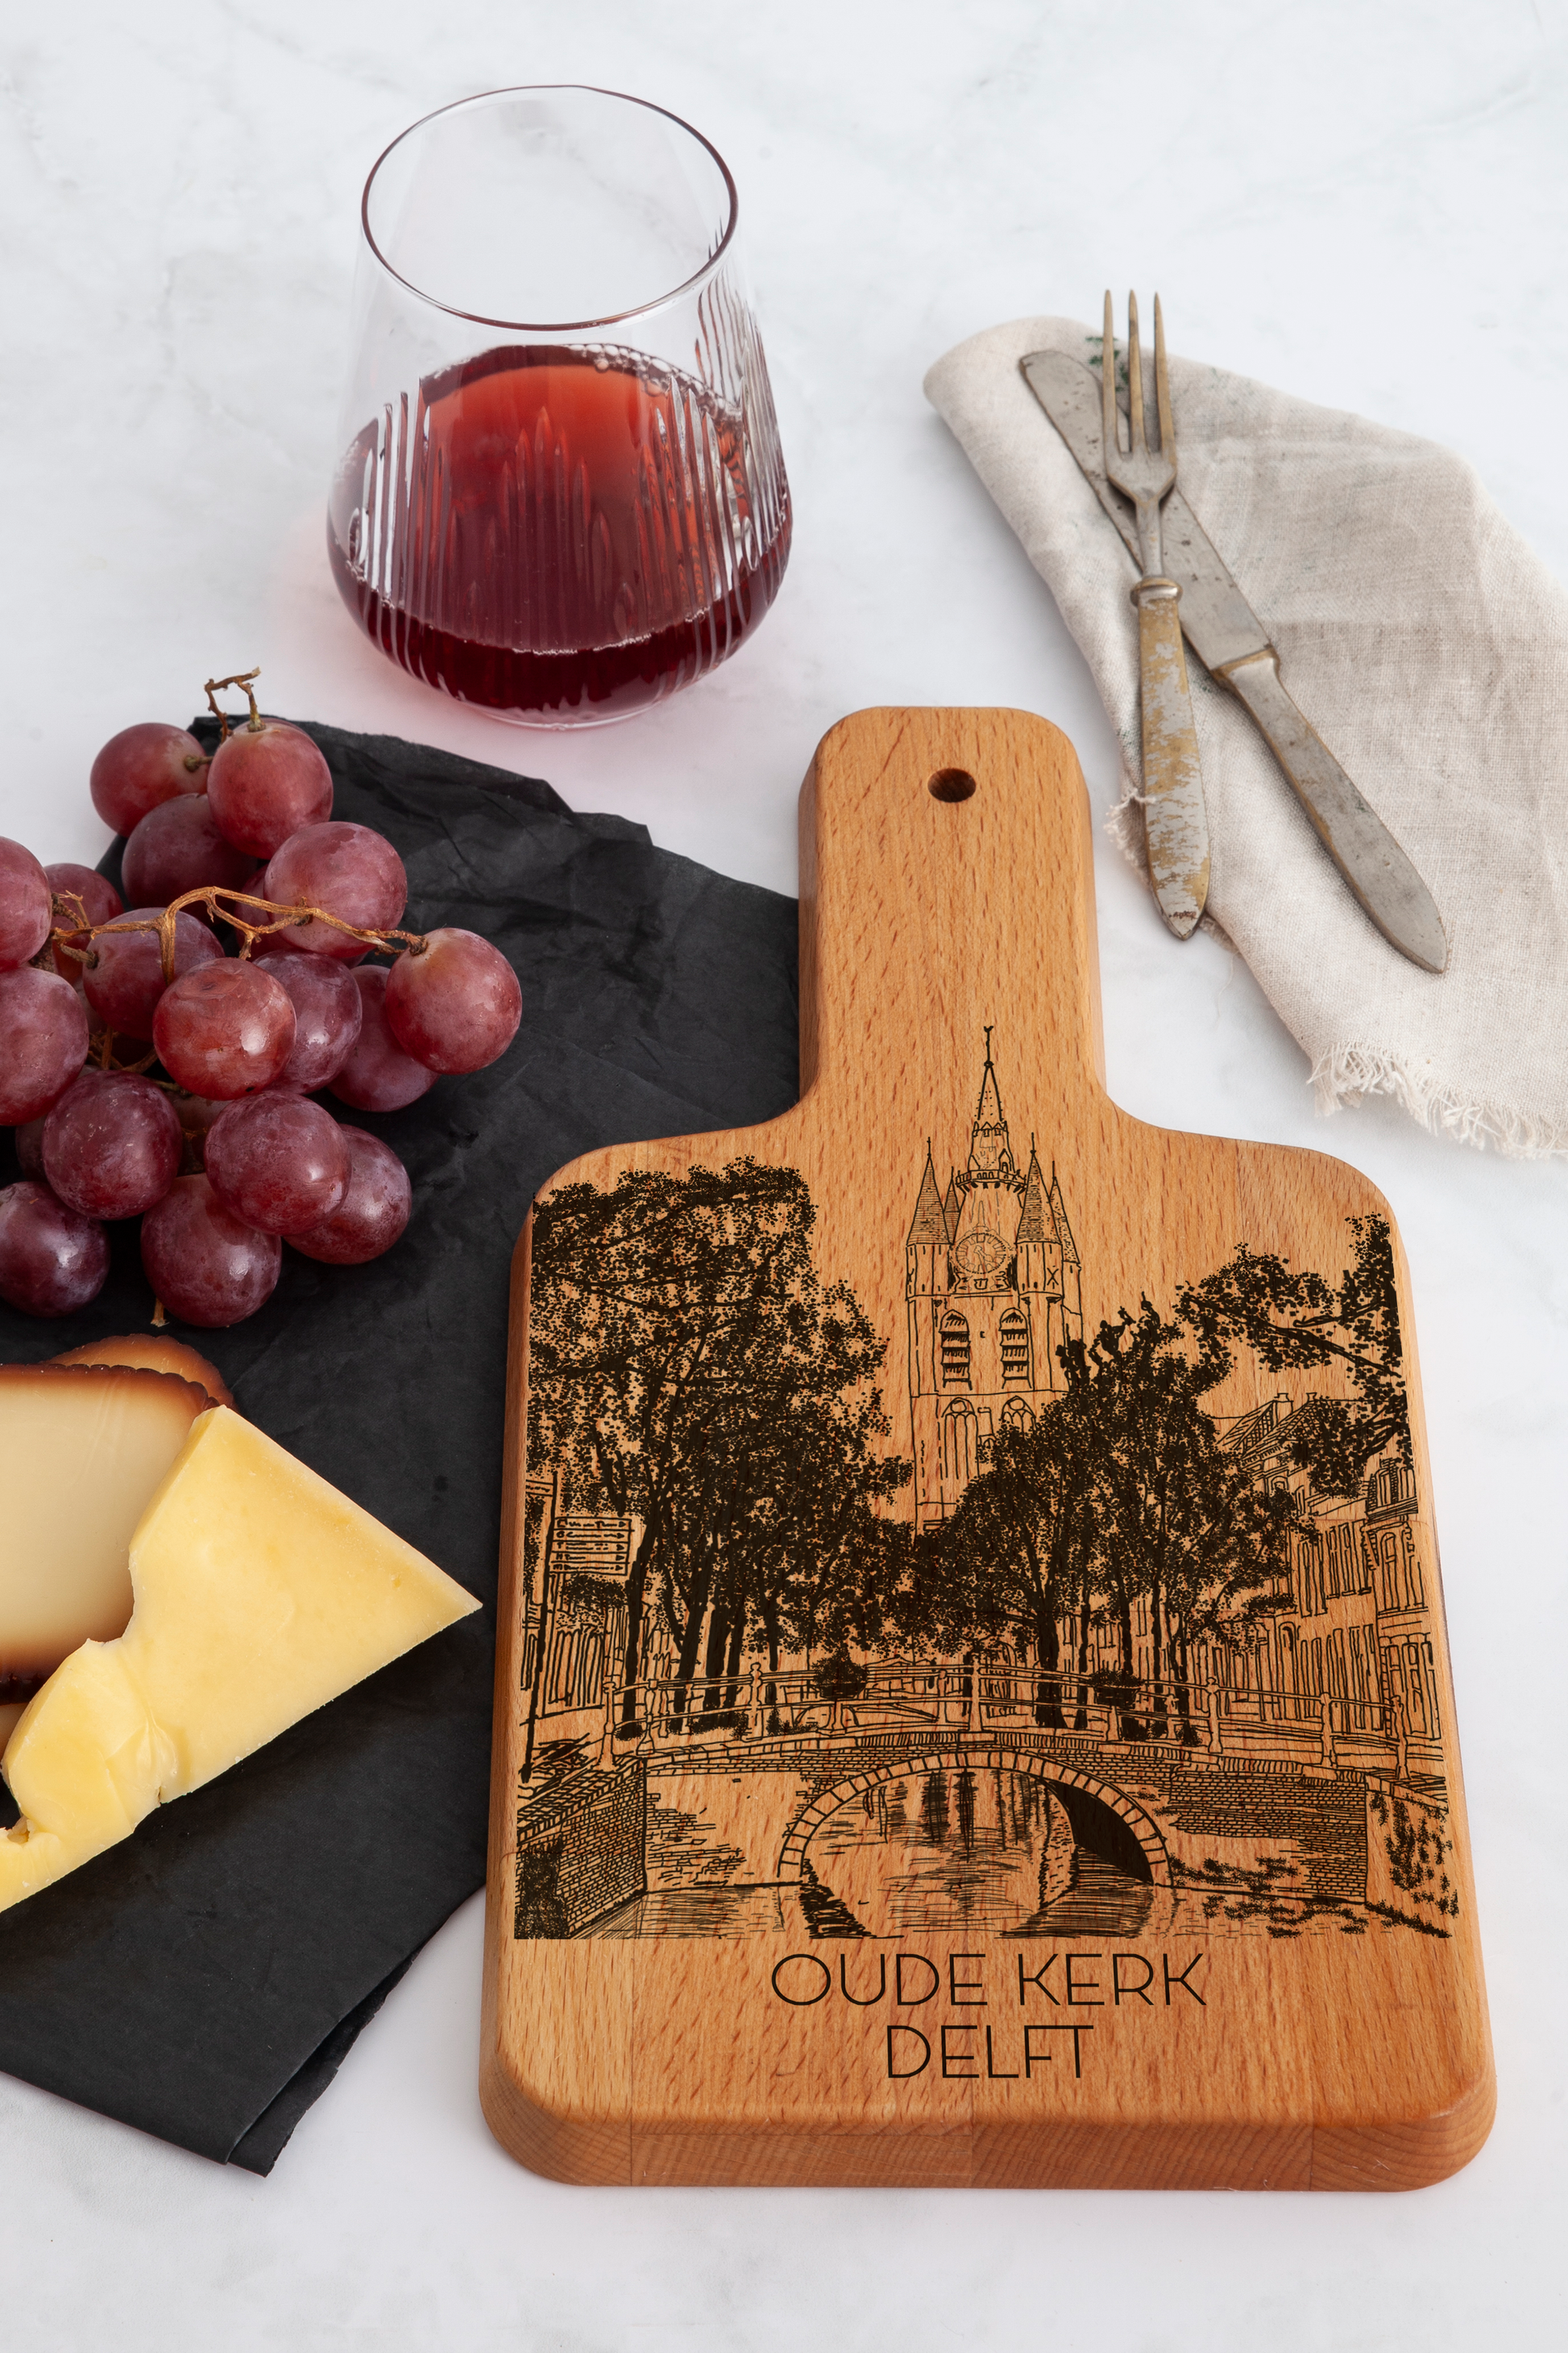 Delft, Oude Kerk, cheese board, on countertop